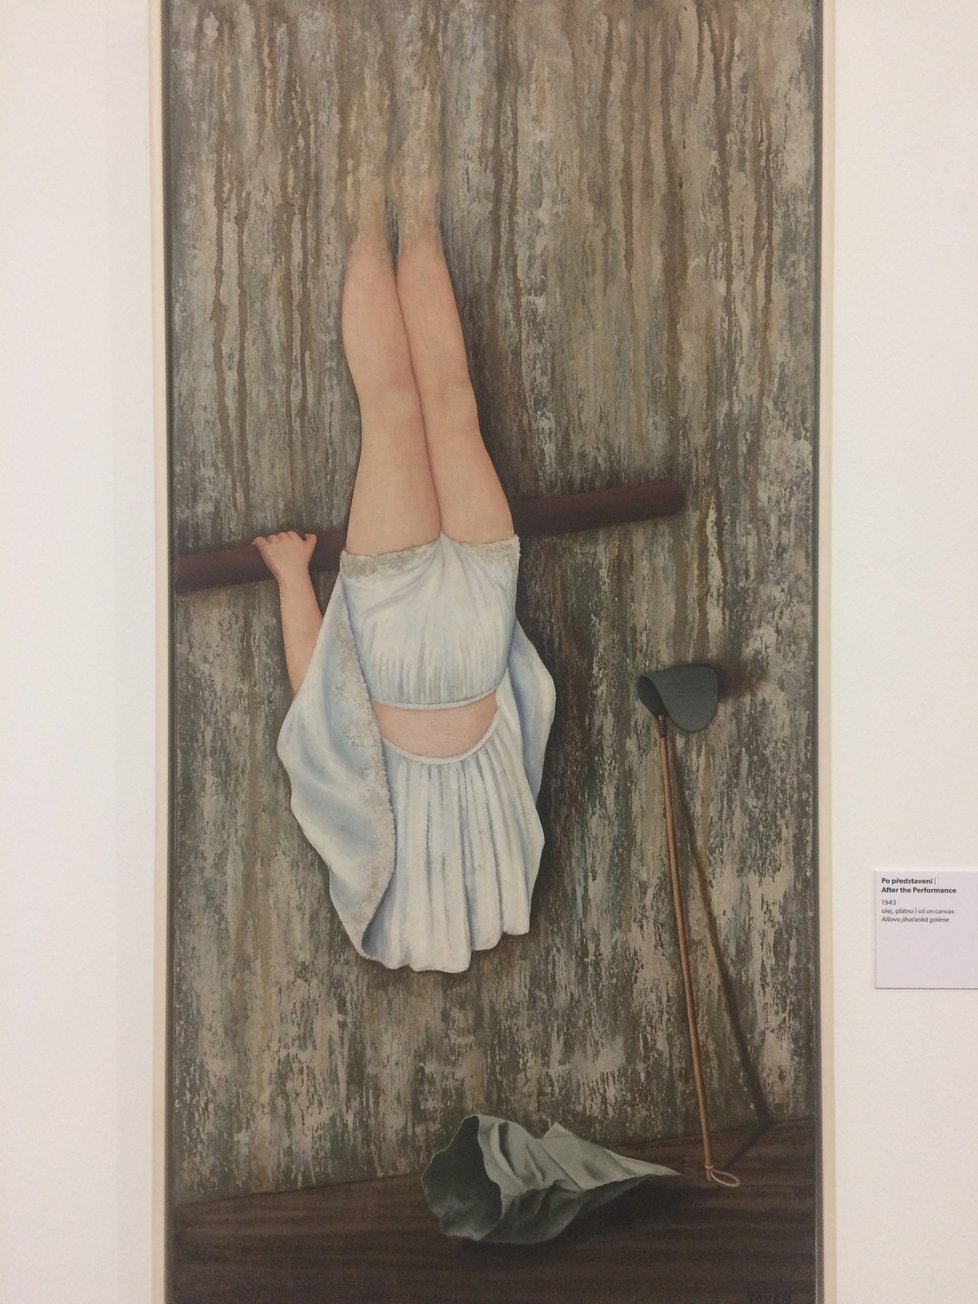 Celosvětově známá malířka Toyen, pražská rodačka, je na výstavě zastoupena hned pěti obrazy. Tento se jmenuje Po představení, vznikal v roce 1943.